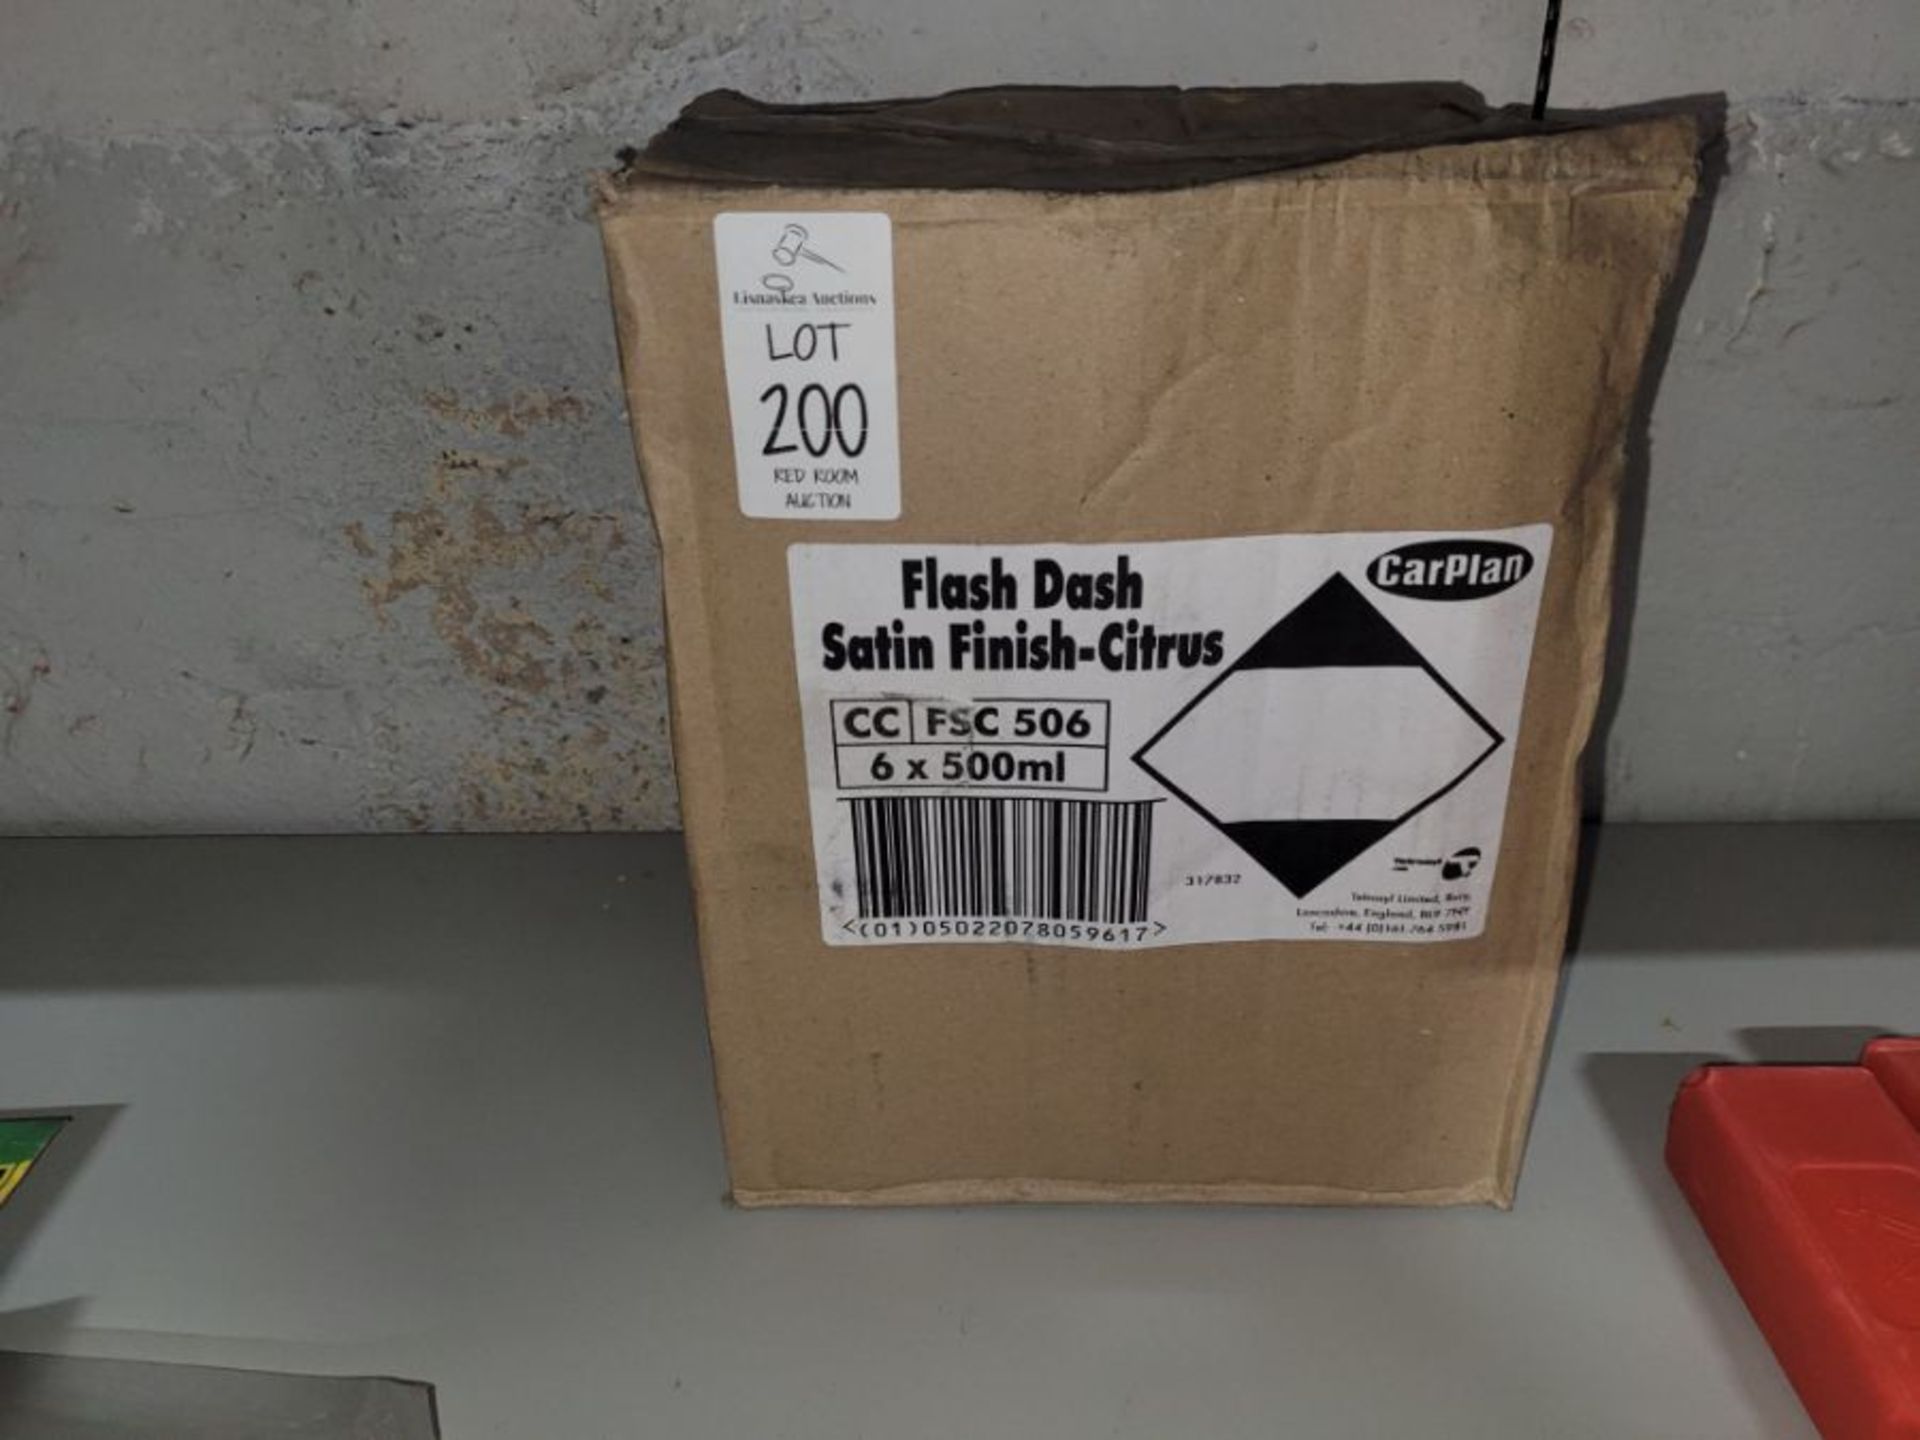 BOX OF 6 FLASH DASH SATIN FINISH CITRUS - Image 3 of 3